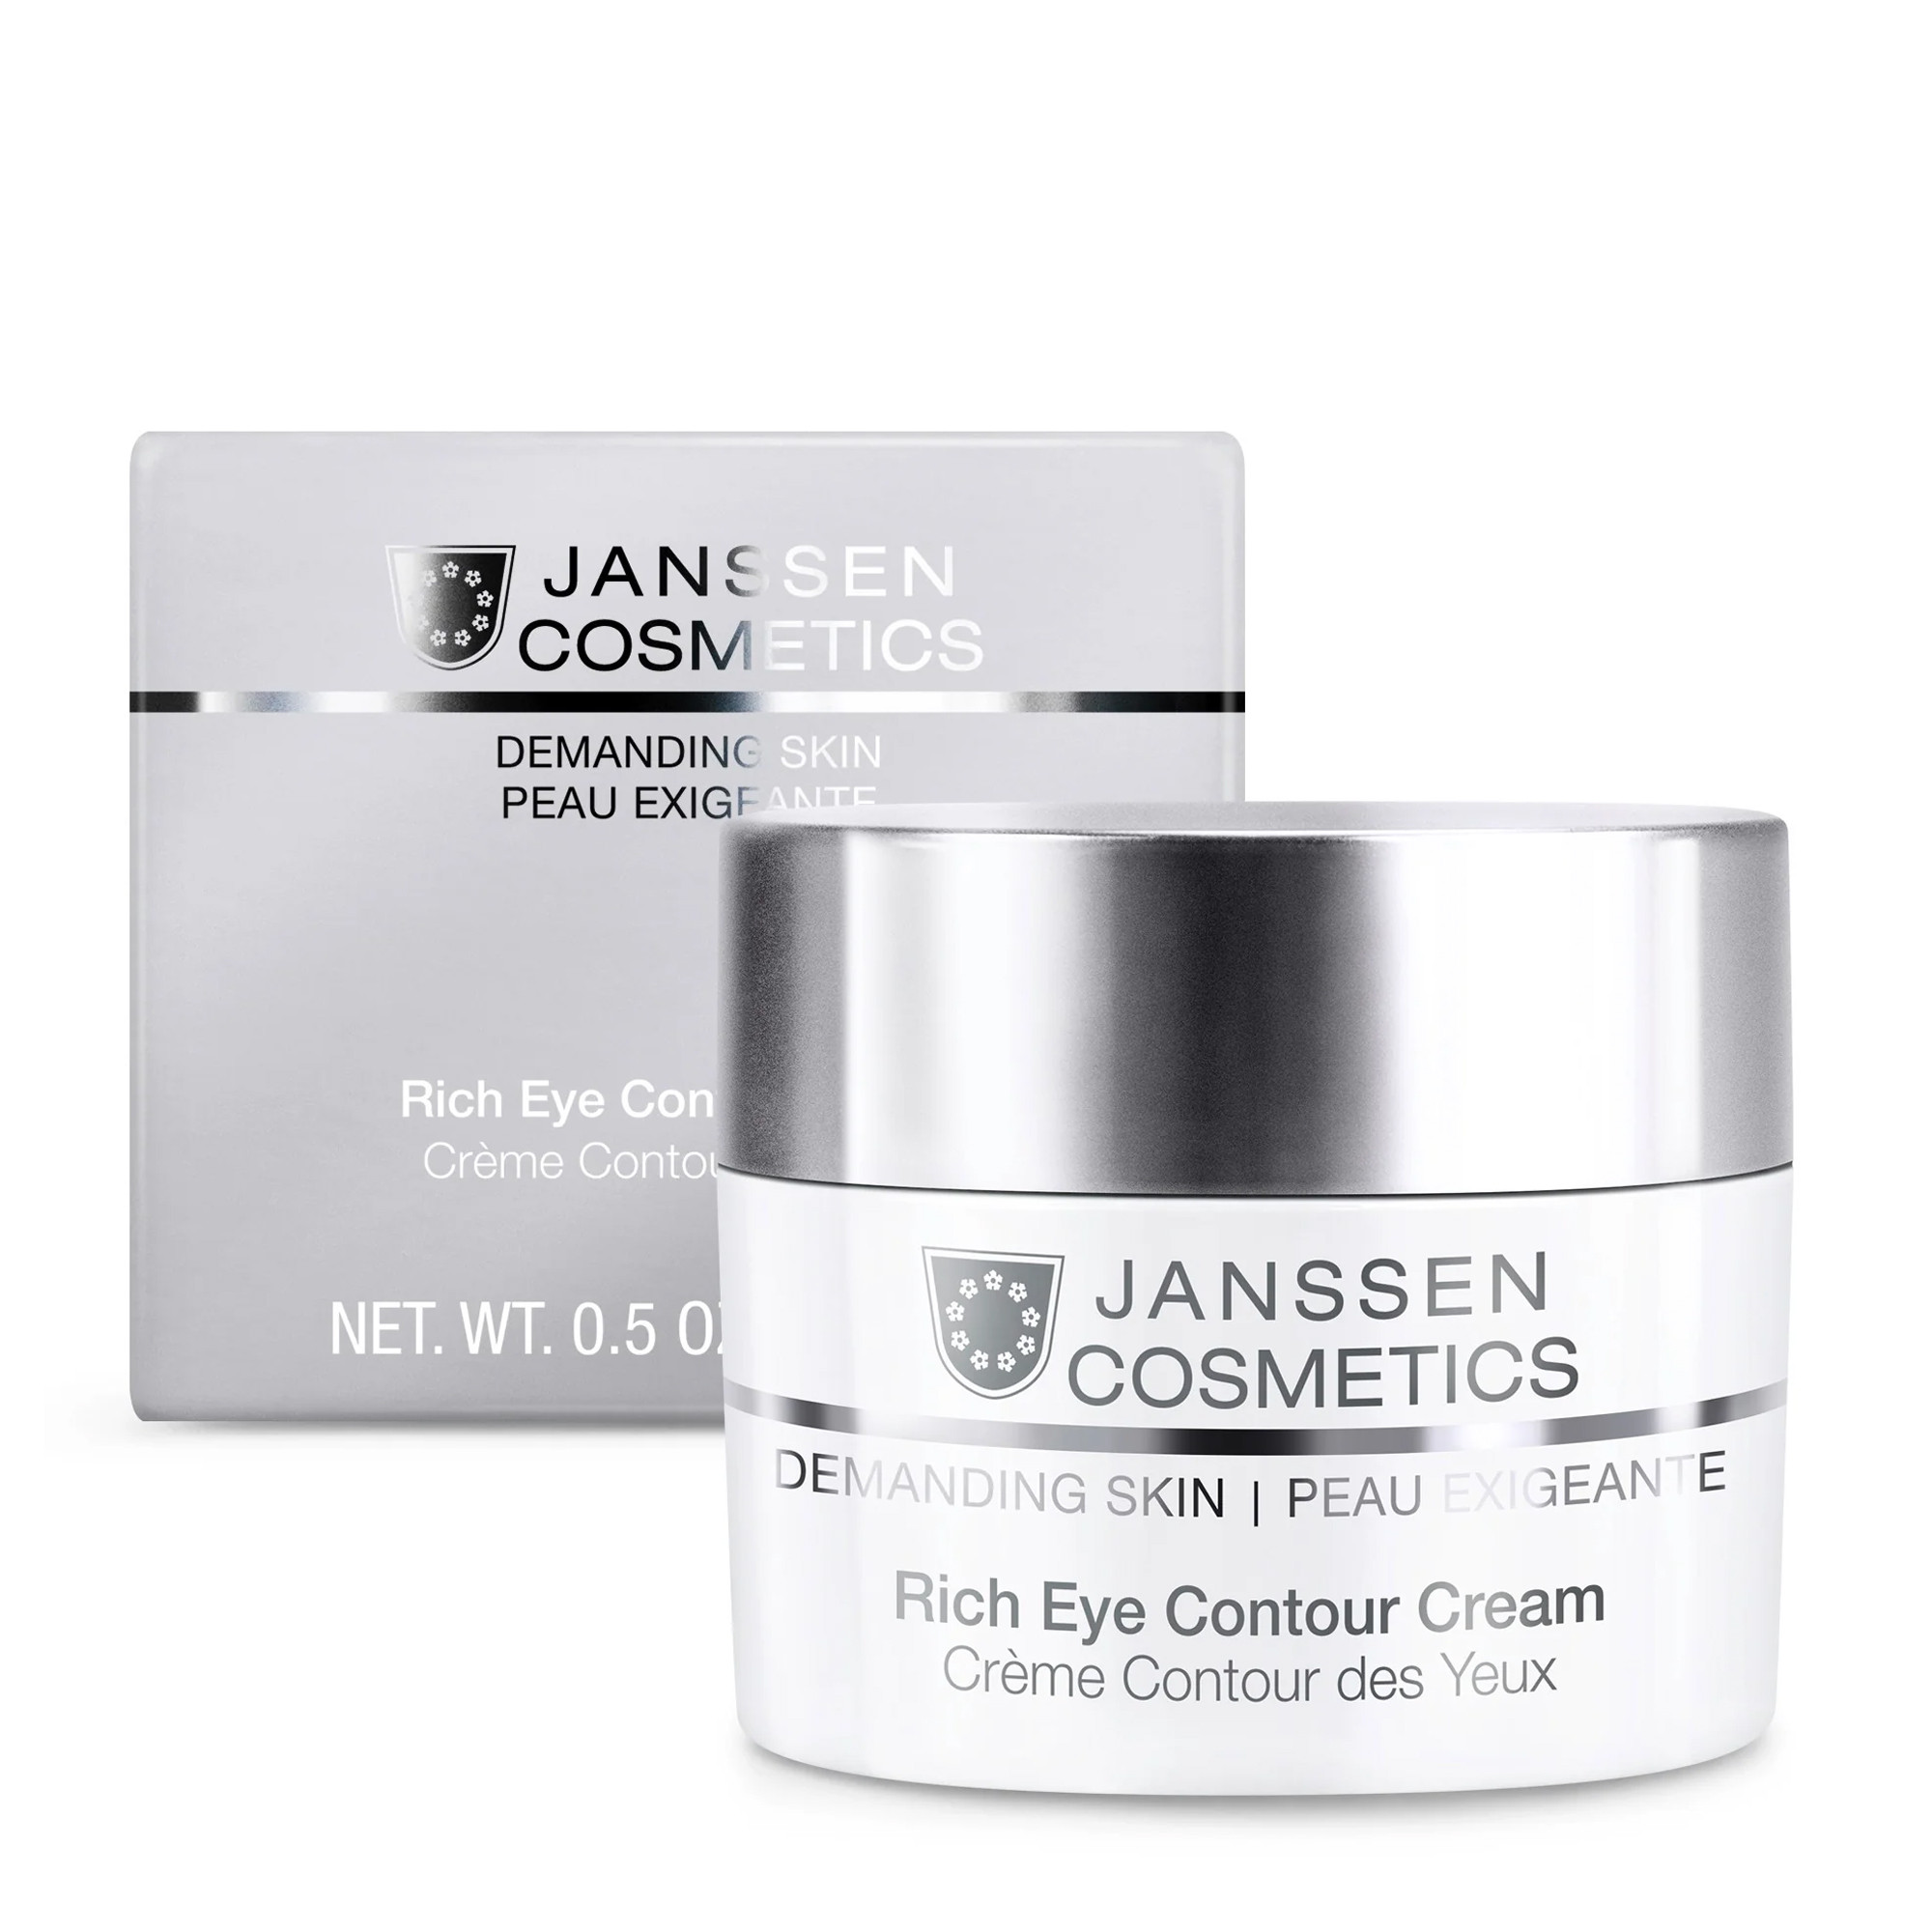 Питательный крем для кожи вокруг глаз Janssen Cosmetics Rich Eye Contour Cream